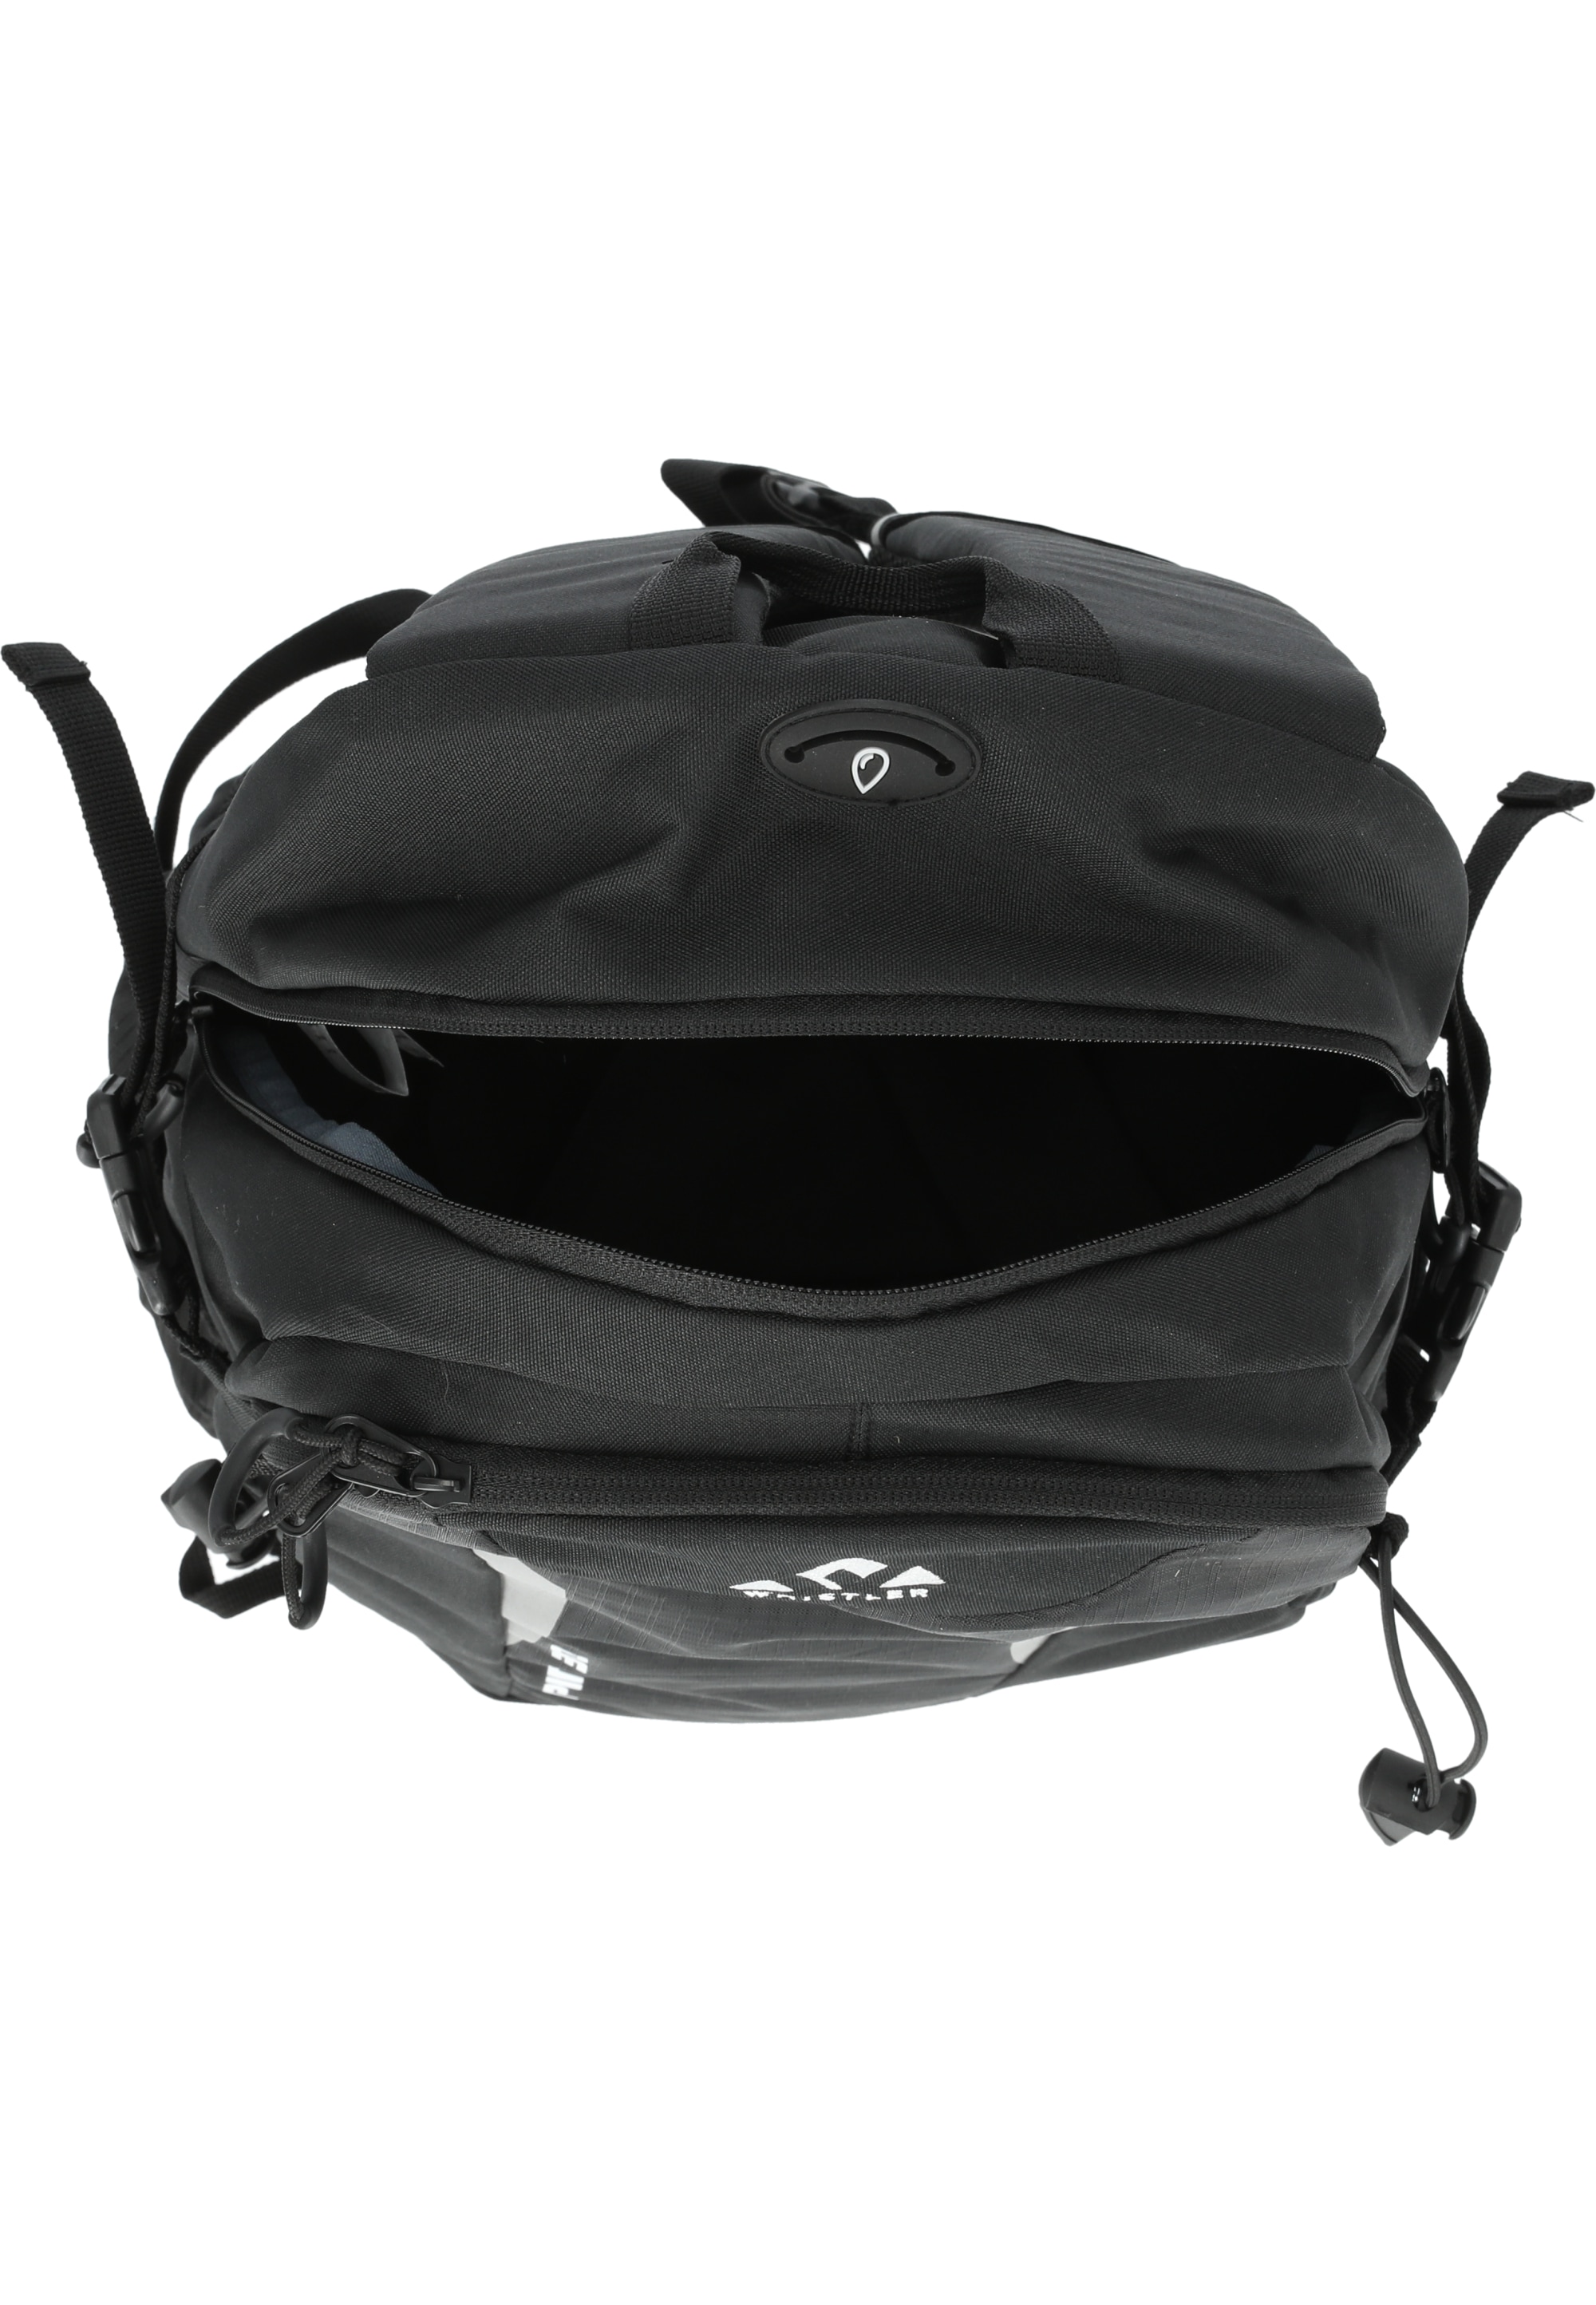 WHISTLER Sportrucksack »Alpinak«, mit vielseitigen Taschen